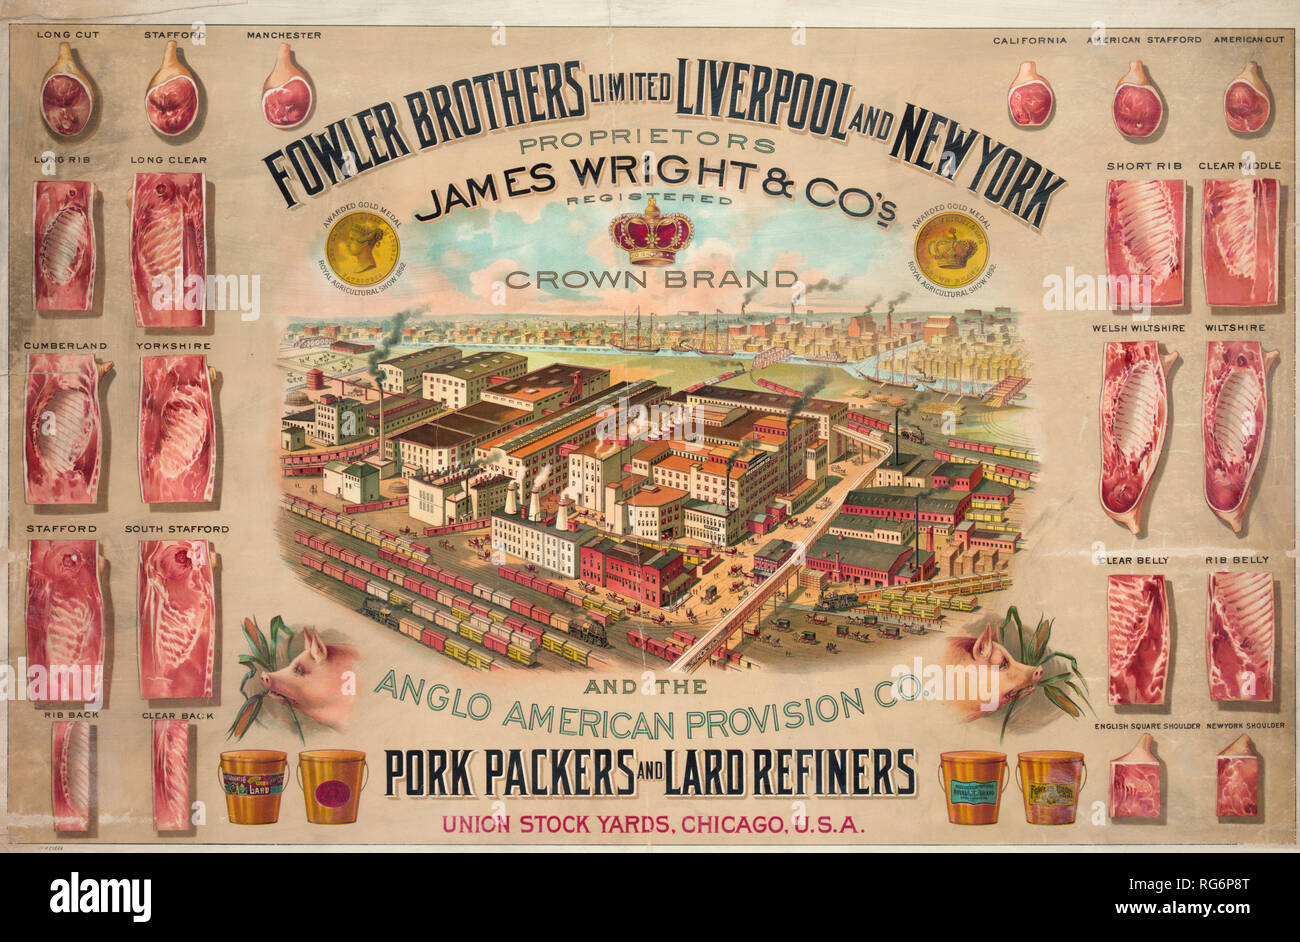 Fowler Brothers Limited Liverpool y Nueva York. Los envasadores y refinadores de manteca de cerdo Foto de stock